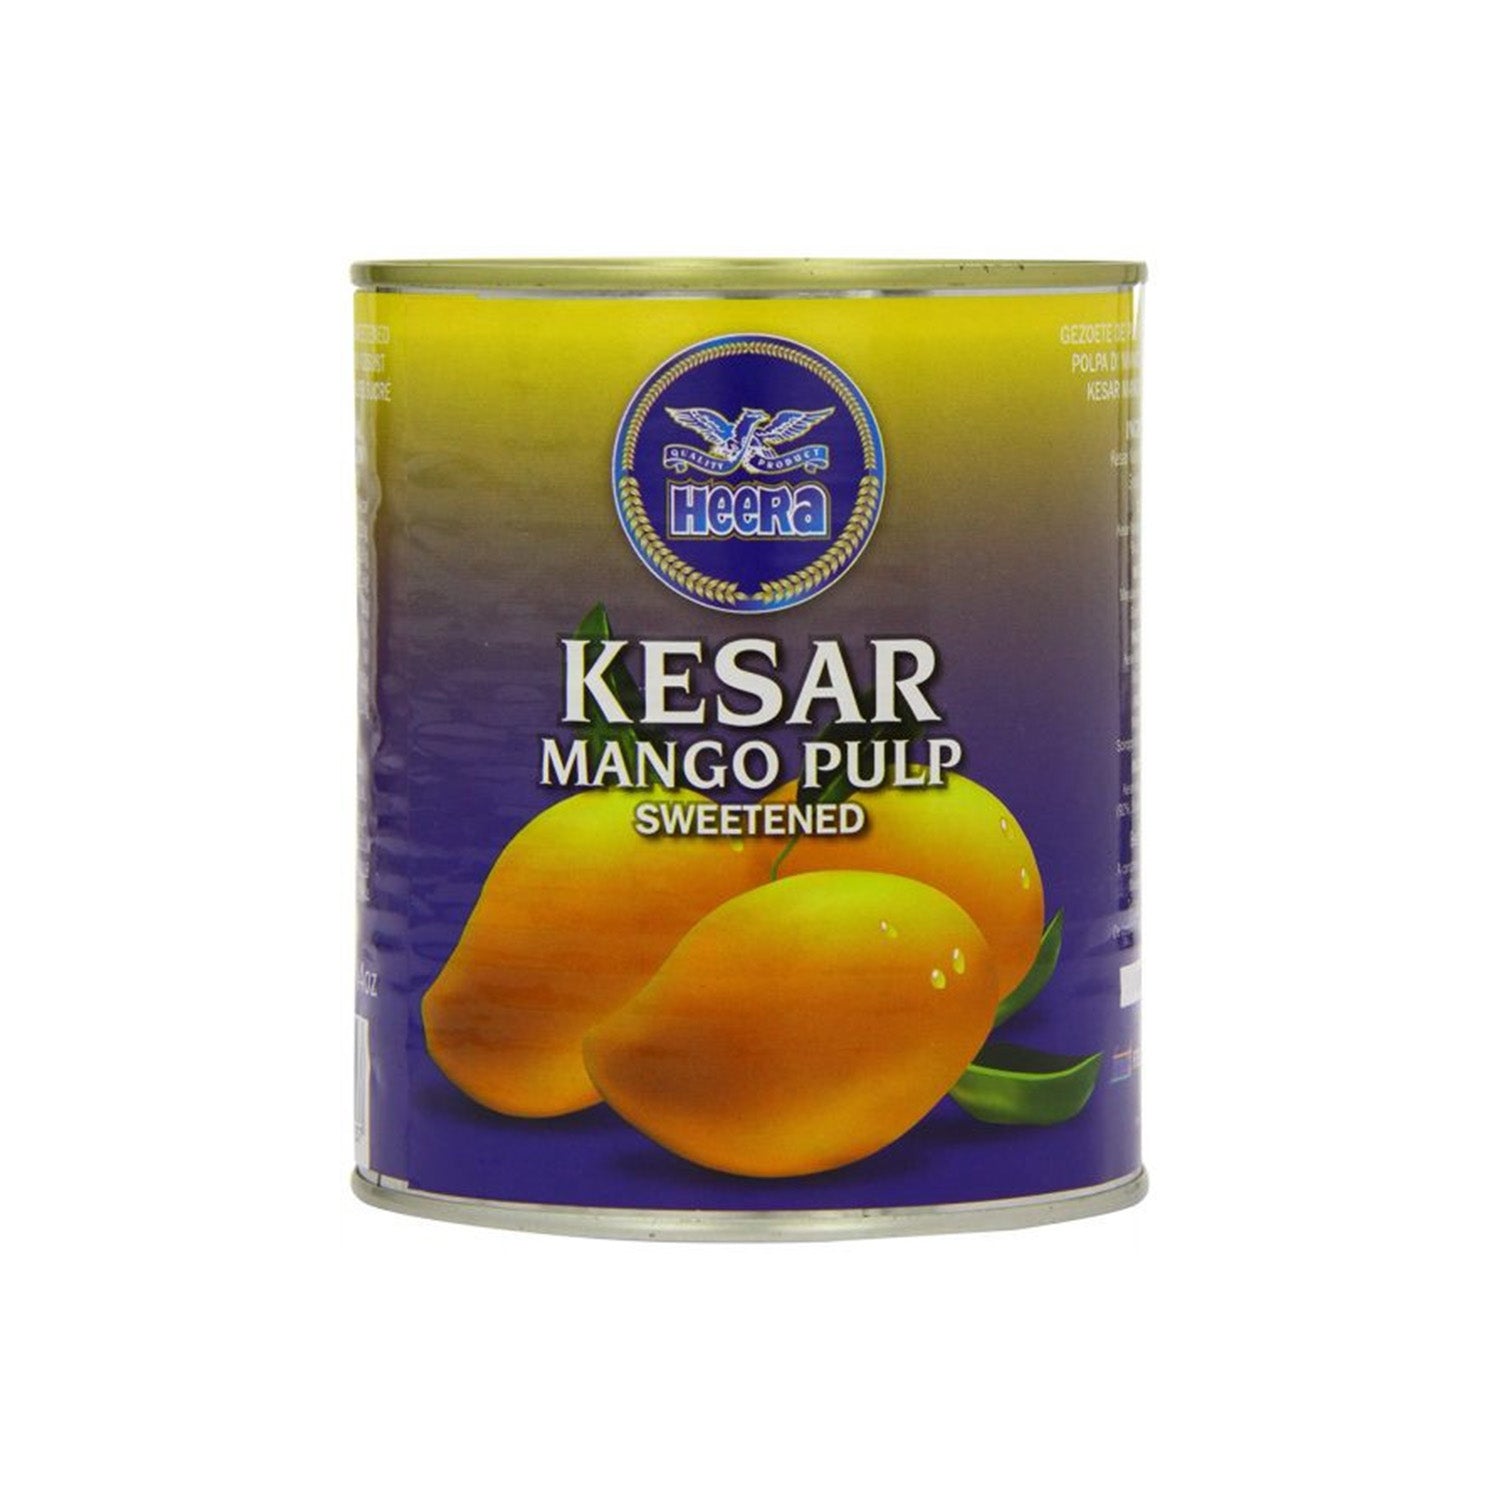 Heera Kesar Mango Pulp Sweetened 850g